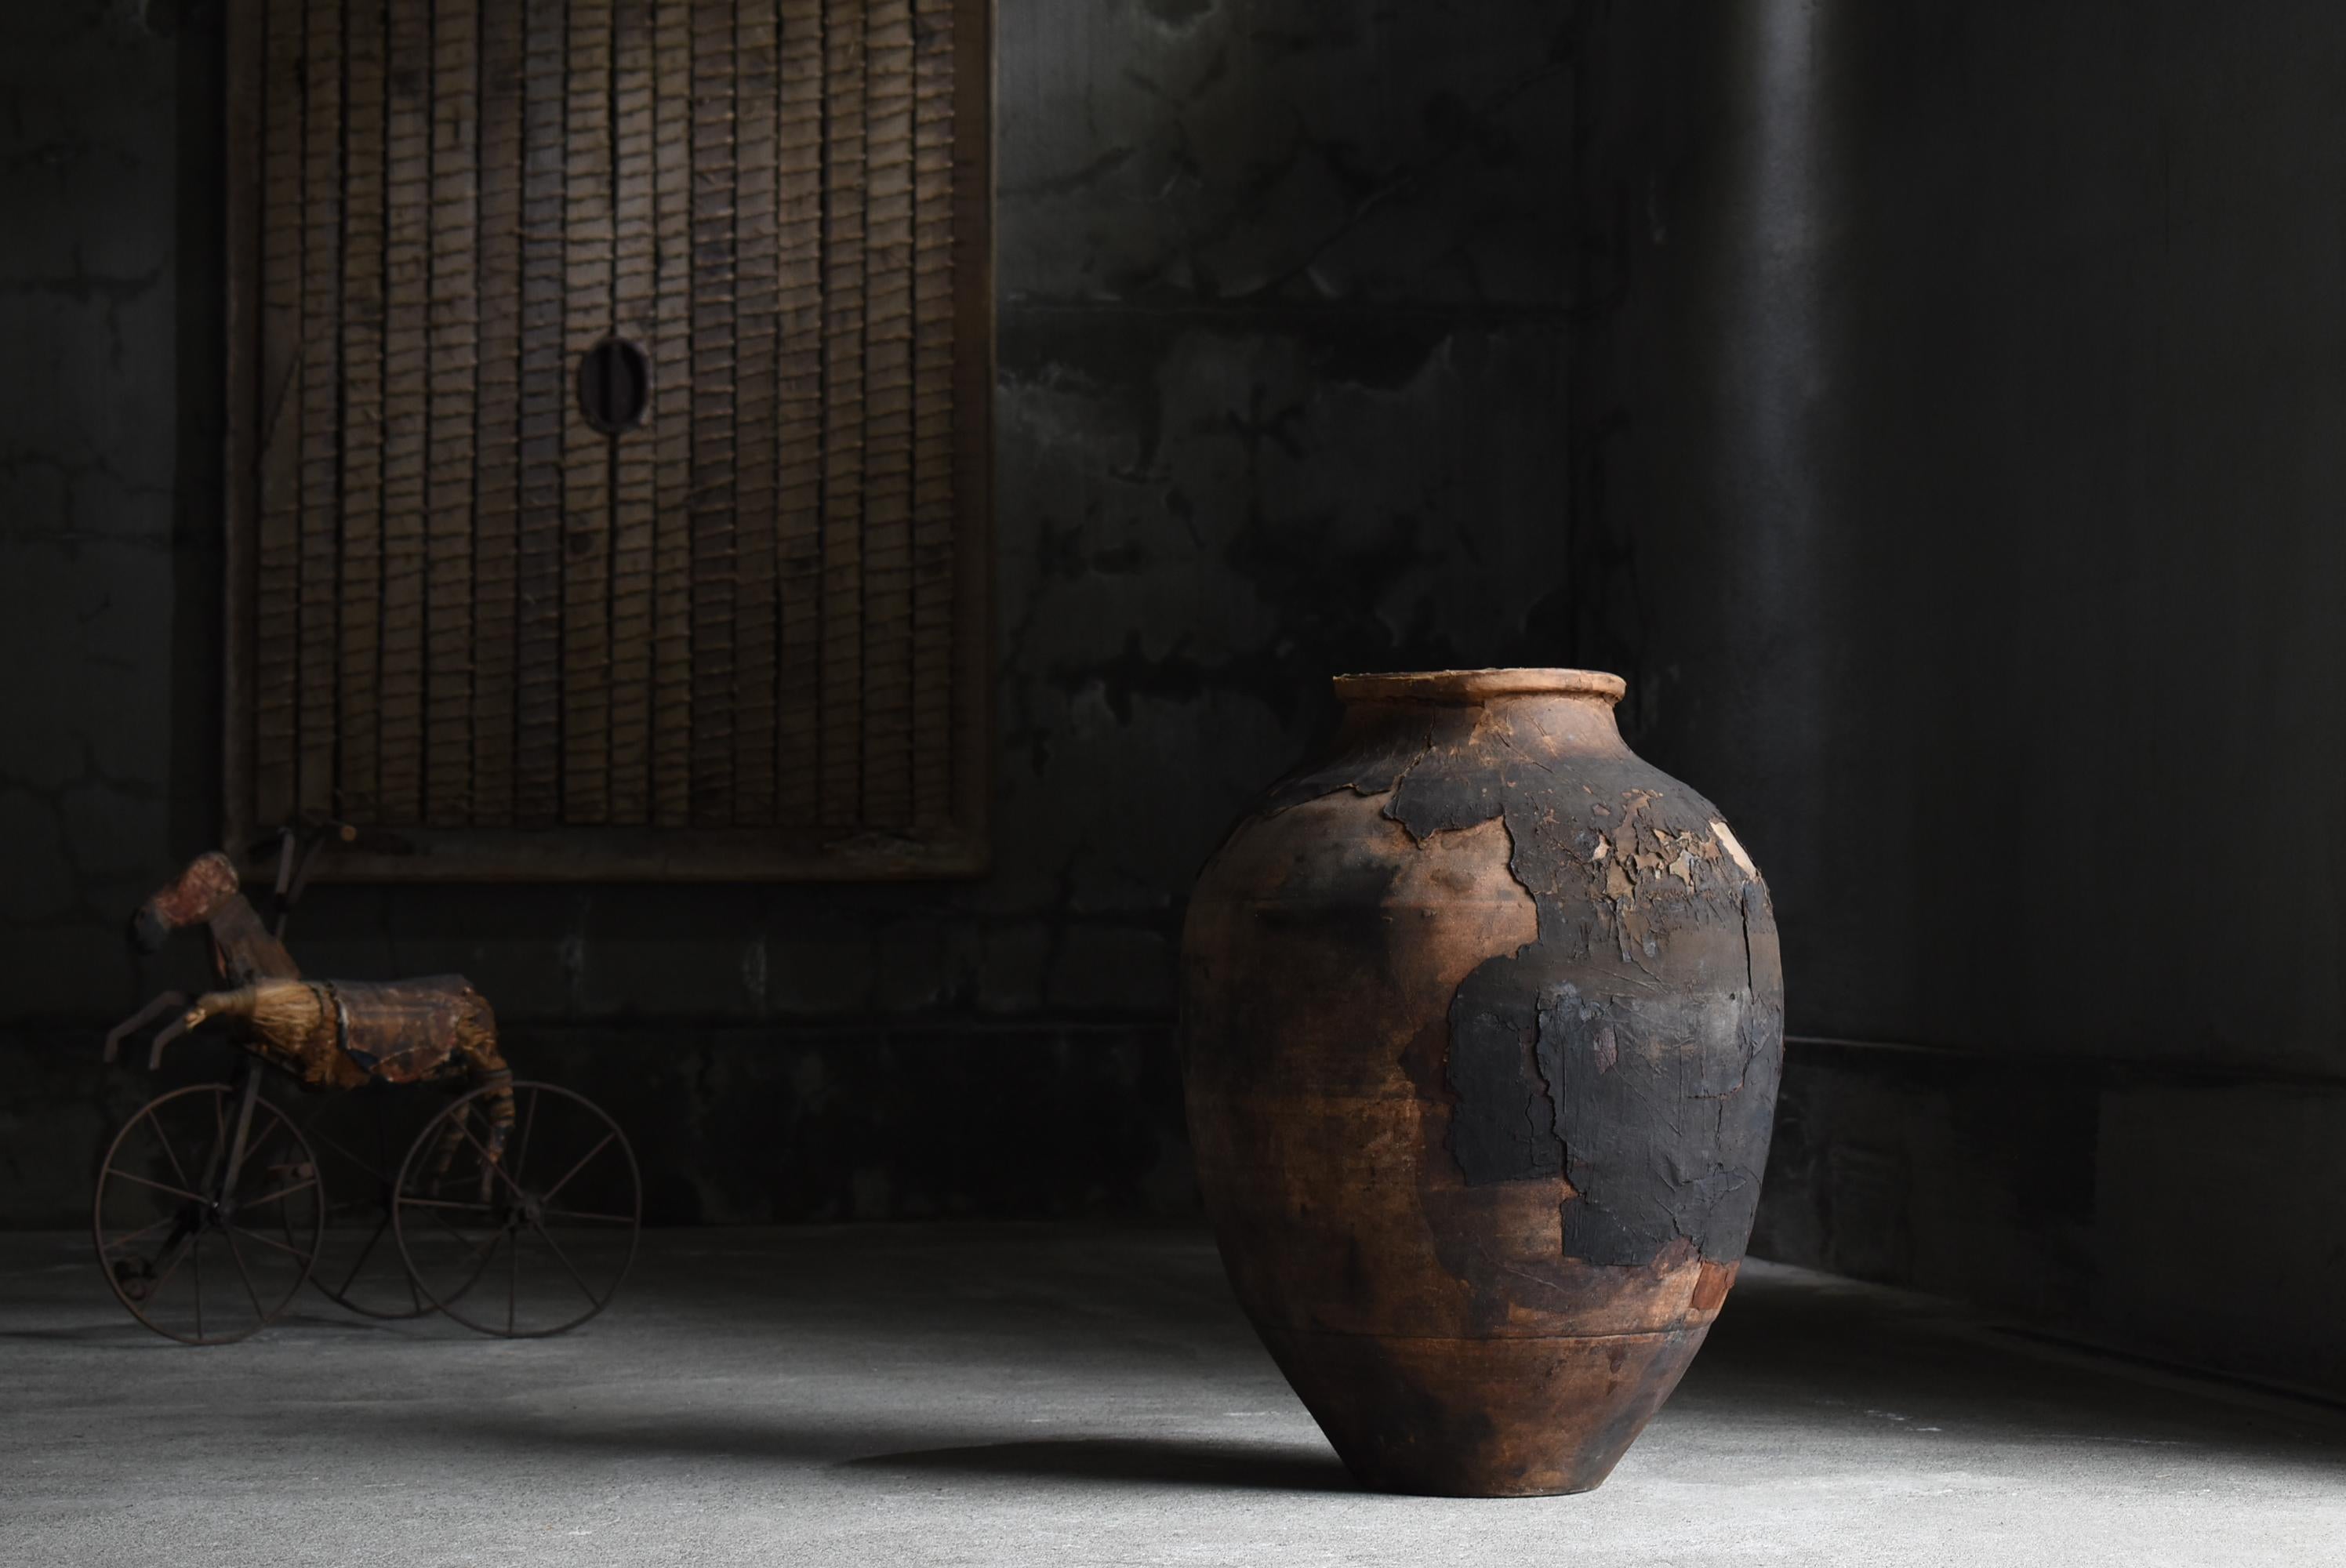 Dies ist eine sehr alte, mit Papier überzogene Keramik, die in Japan hergestellt wurde.
Sie stammt aus der Meiji-Zeit (1860-1900).

Diese große Vase diente dem Transport und der Aufbewahrung von Teeblättern.
Es scheint mit Papier überzogen worden zu